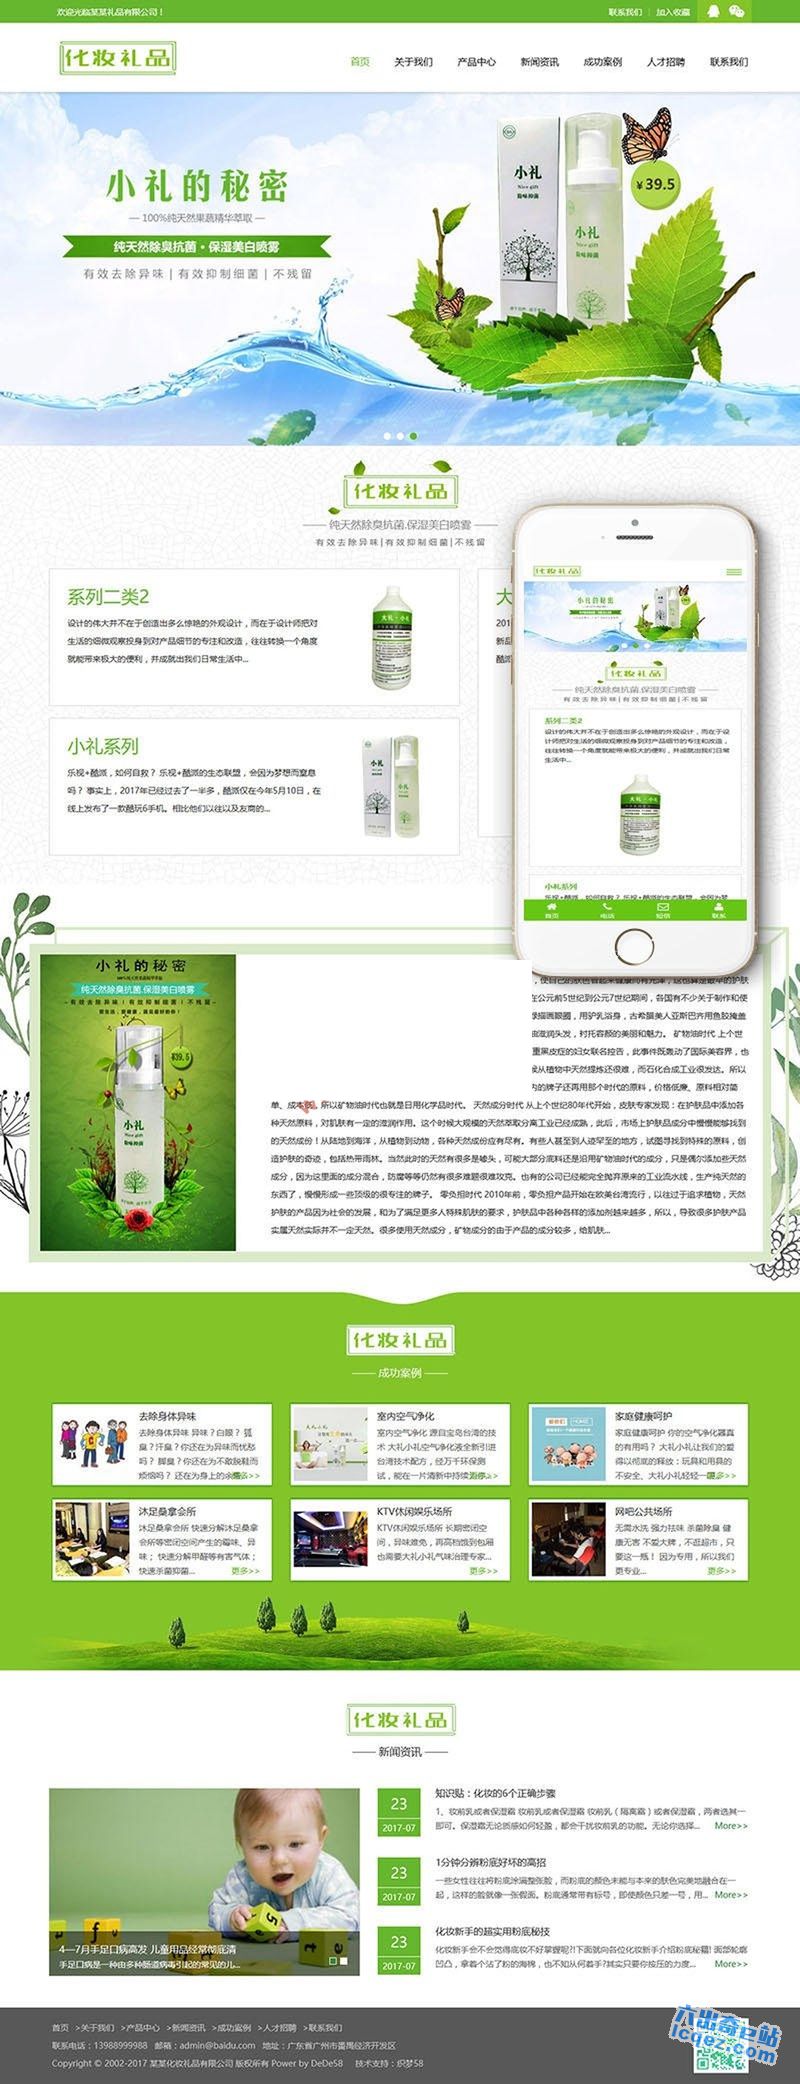     响应式绿色化妆美容礼品网站源码 织梦模板(自适应手机端)
